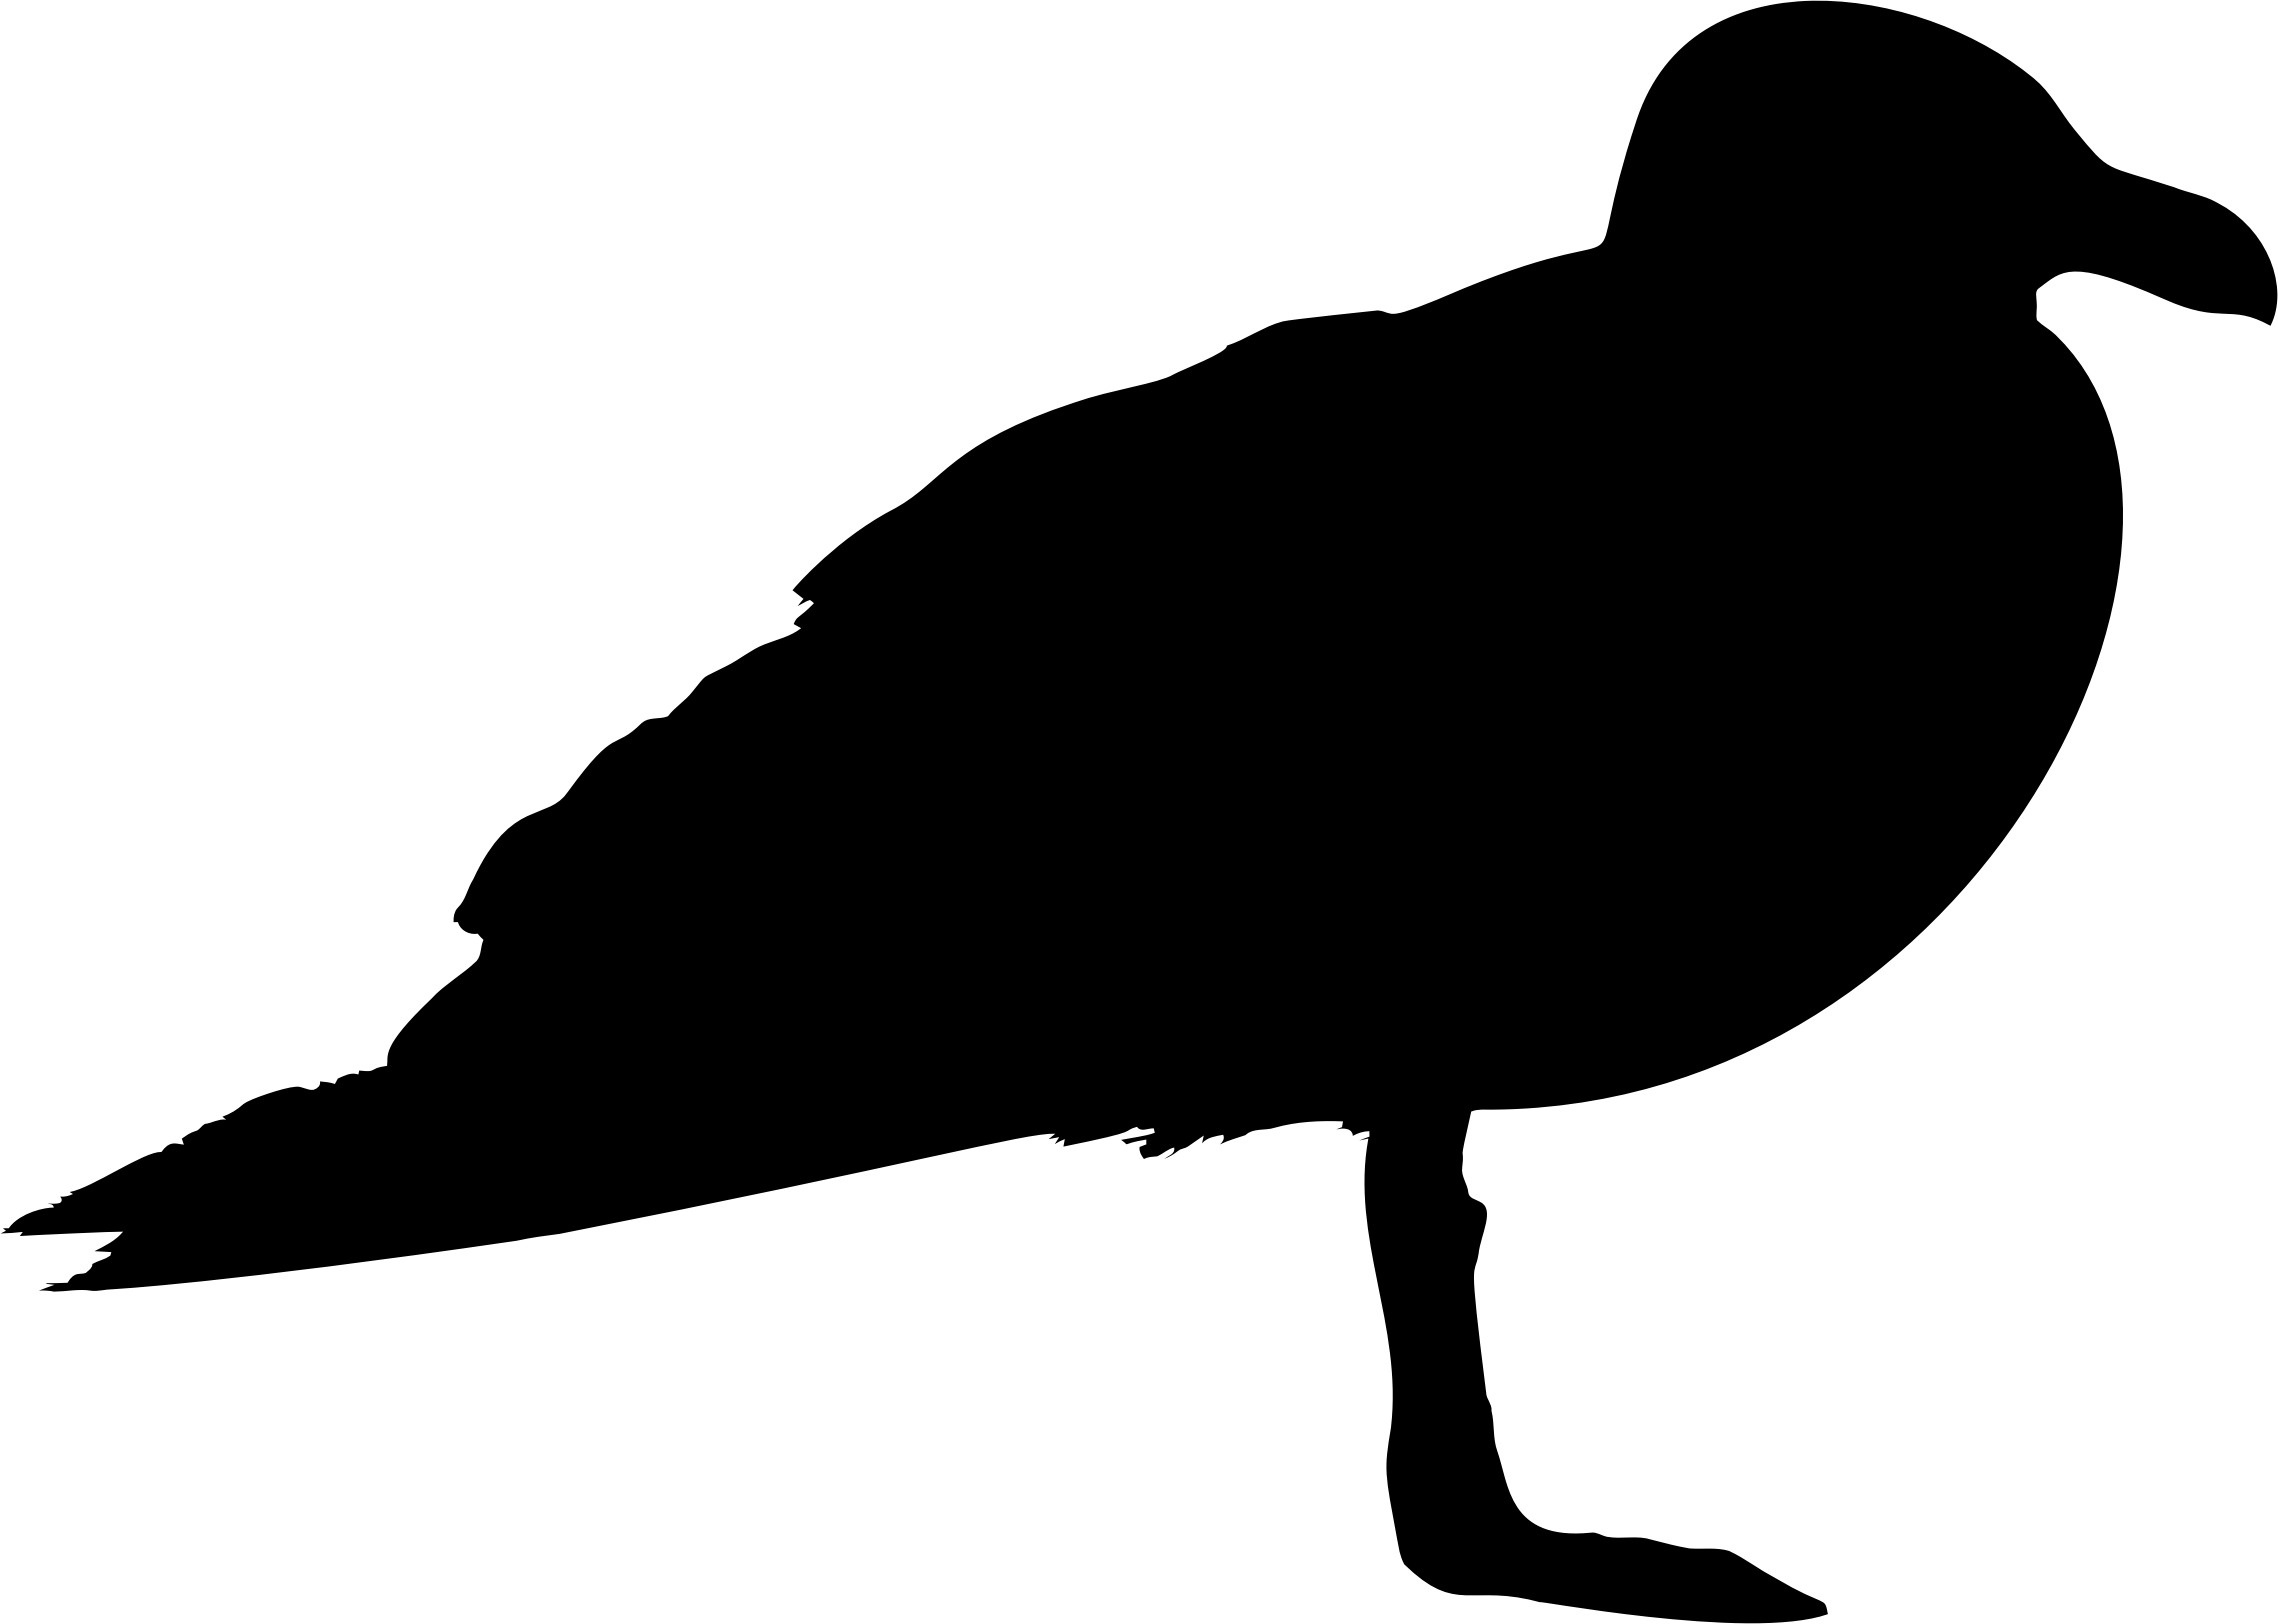 Seagull Profile Silhouette - Duck Pictogram (2278x1624)